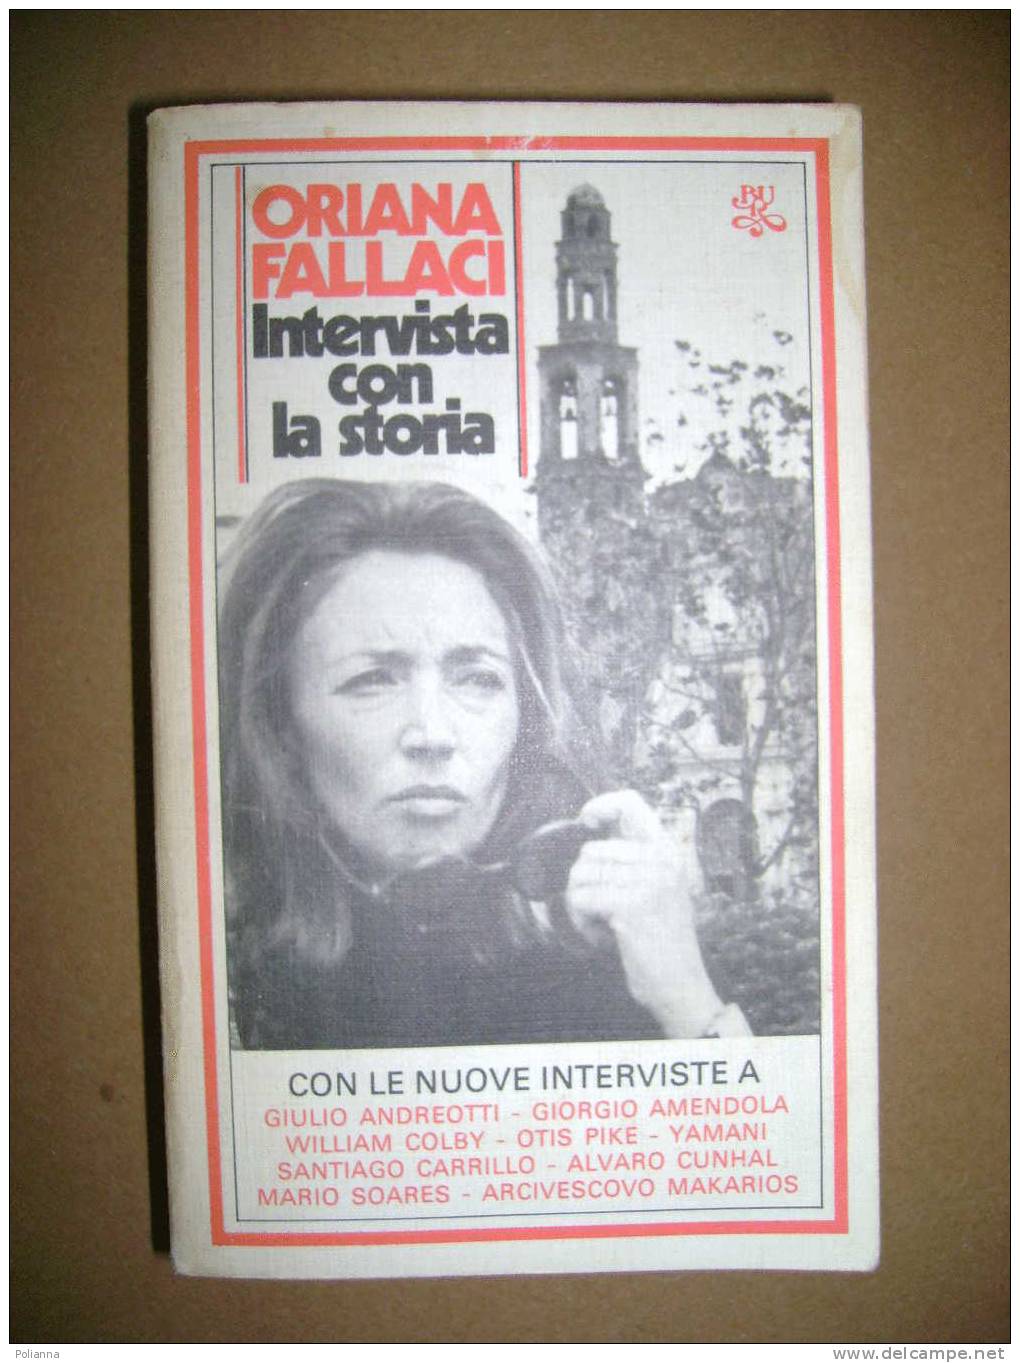 PAC/20 Oriana Fallaci INTERVISTA CON LA STORIA Bur Rizzoli 1980 - Periodismo